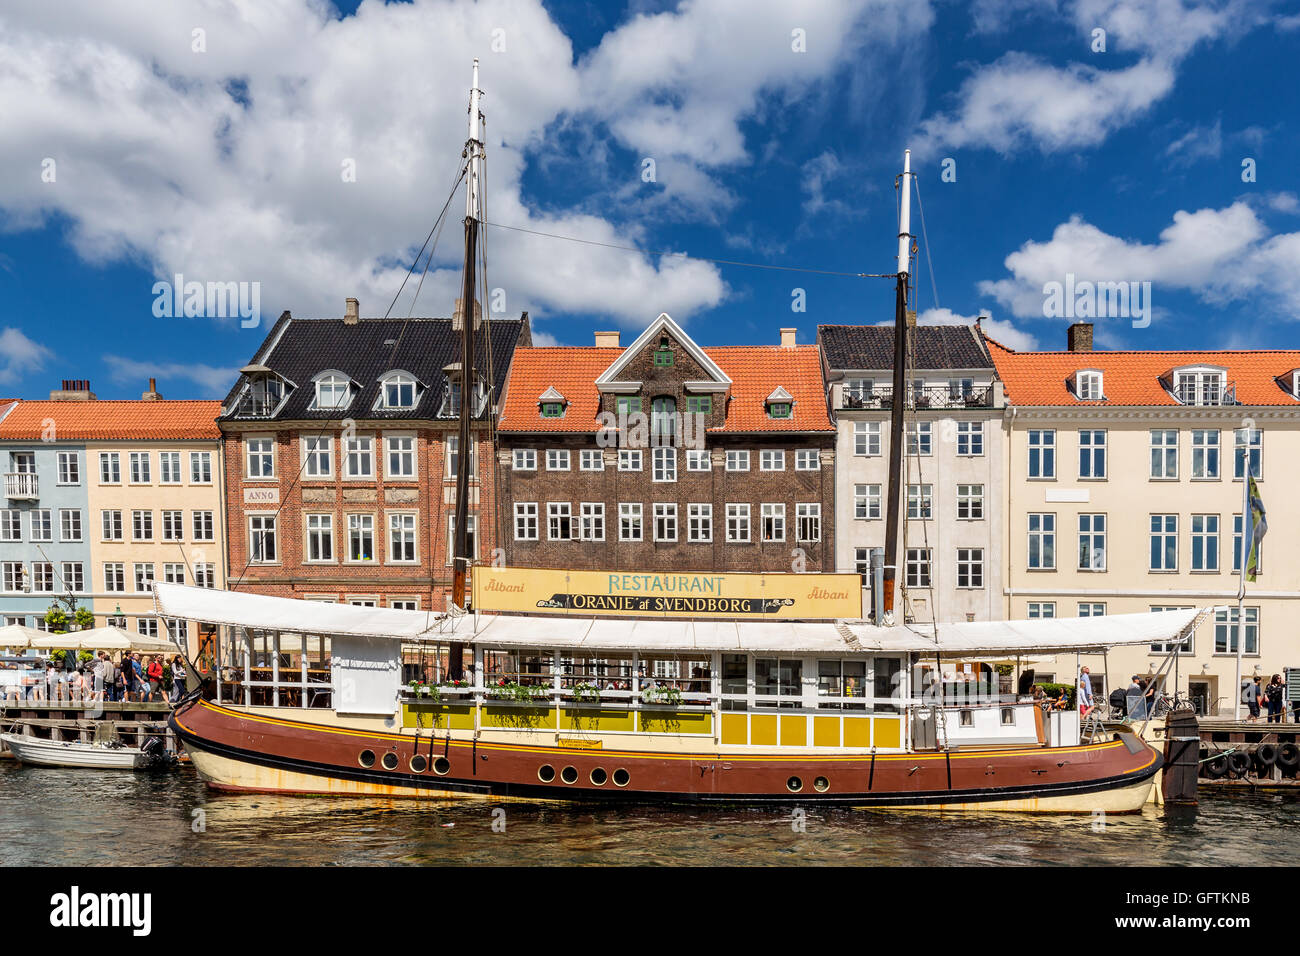 Boat restaurant, Nyhavn Canal, Copenhagen, Denmark Stock Photo